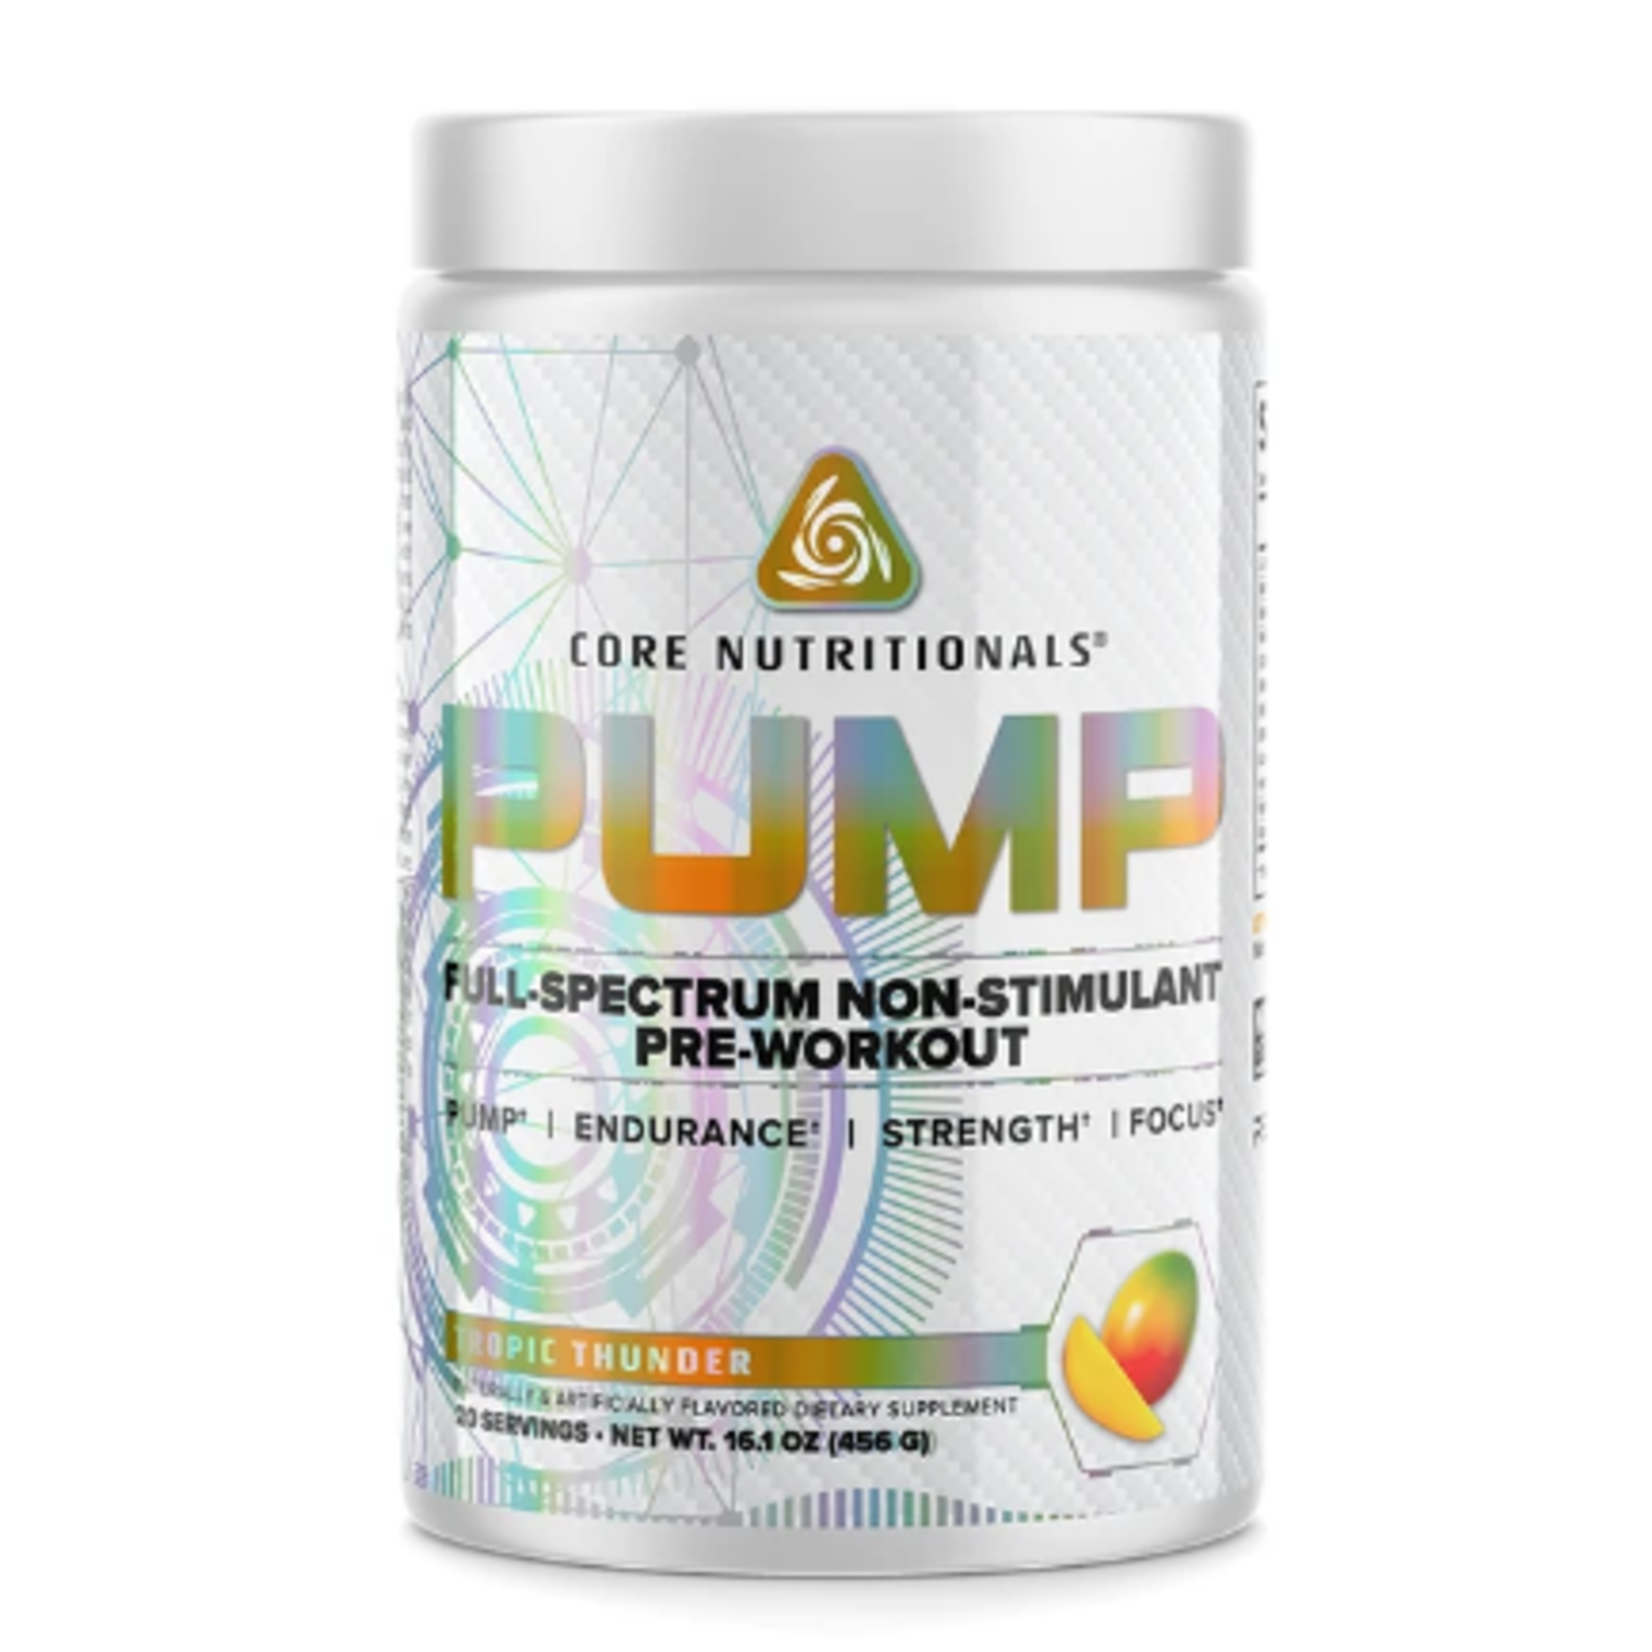 Core Nutritionals Core Pump